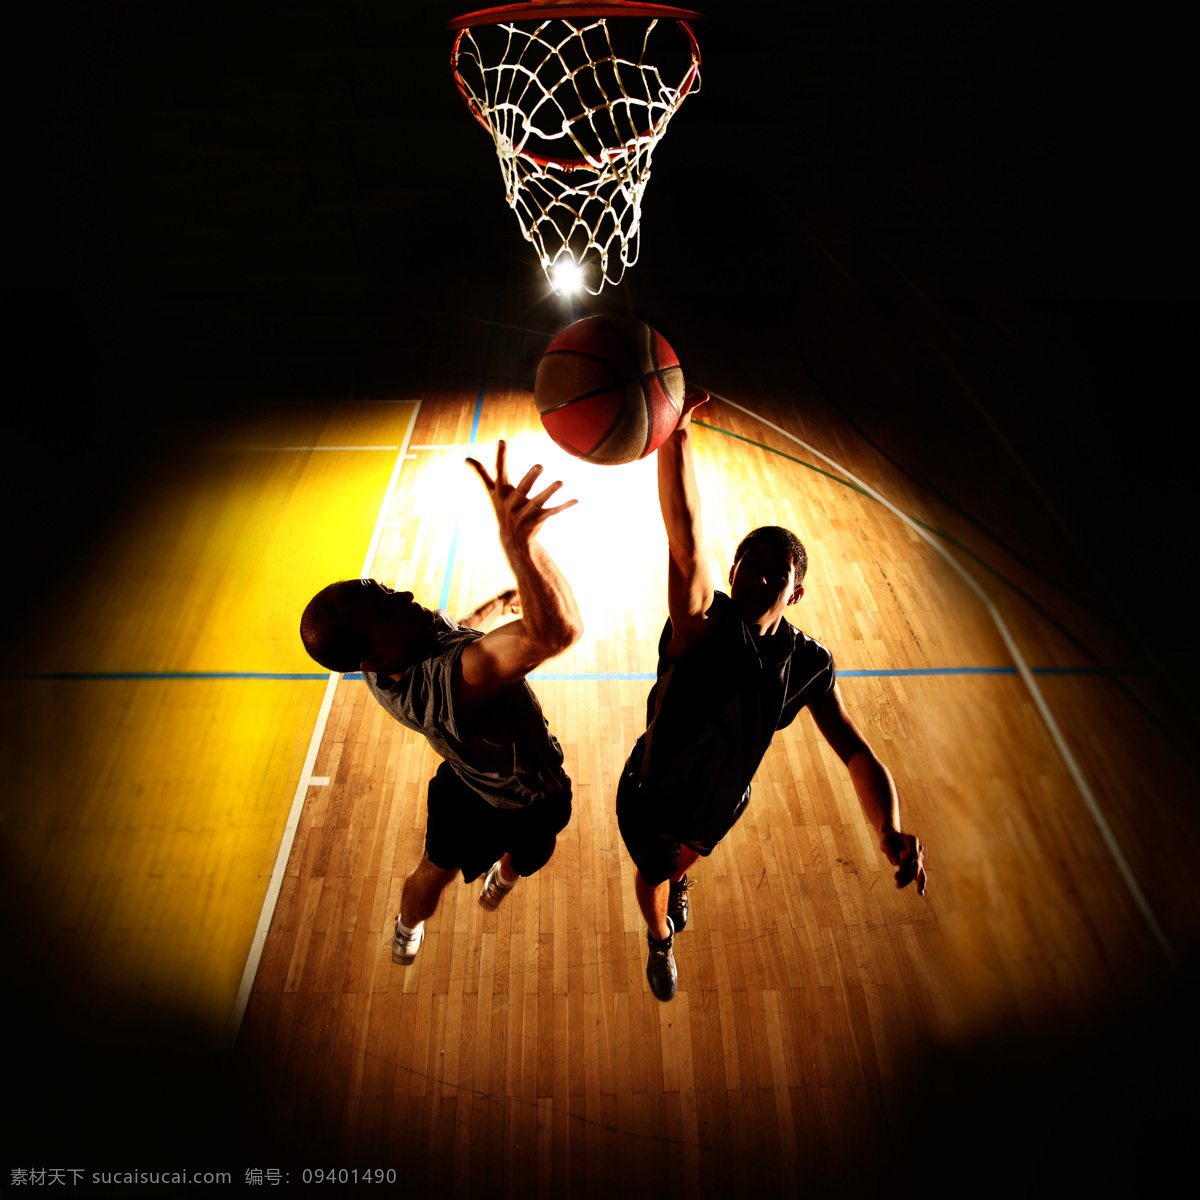 篮球 比赛 男子 运动员 打篮球的男生 篮球运动员 体育运动员 体育运动 体育运动项目 生活百科